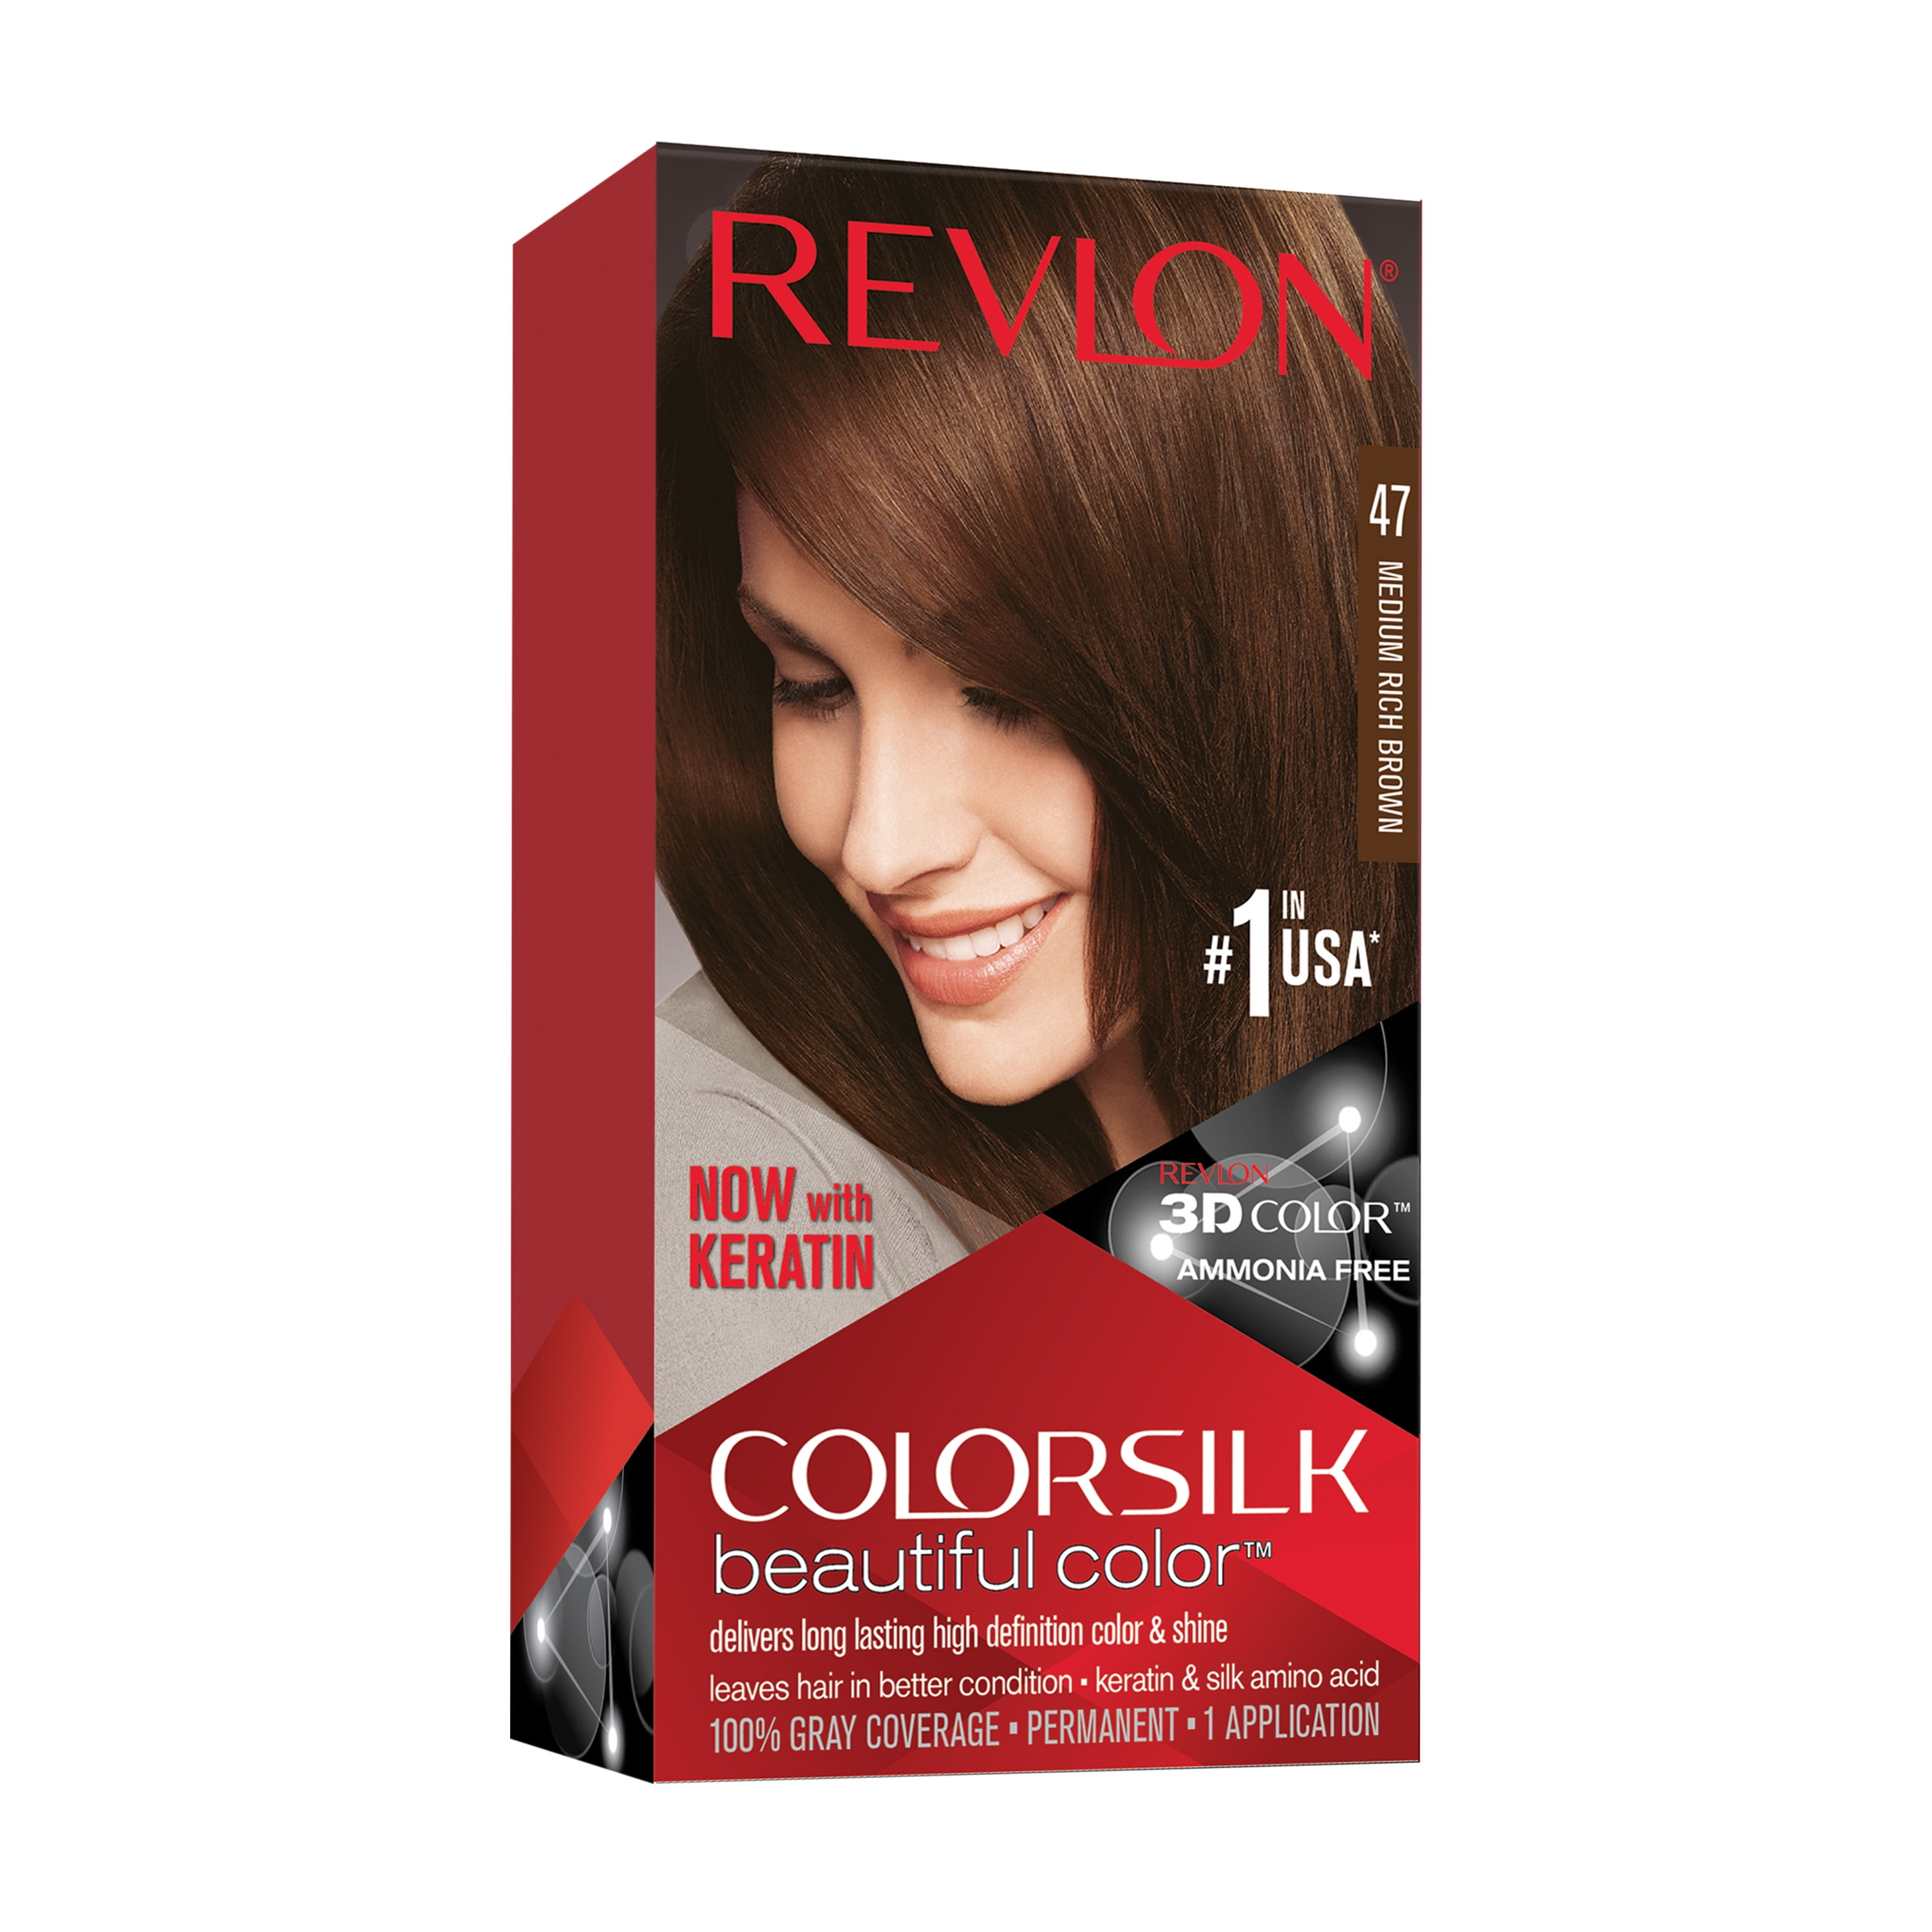 Revlon Colorsilk Beautiful Color Permanent Hair Dye, Dark Brown, At-Home  Full Coverage Application Kit, 47 Medium Rich Brown, 1 count - Walmart.com